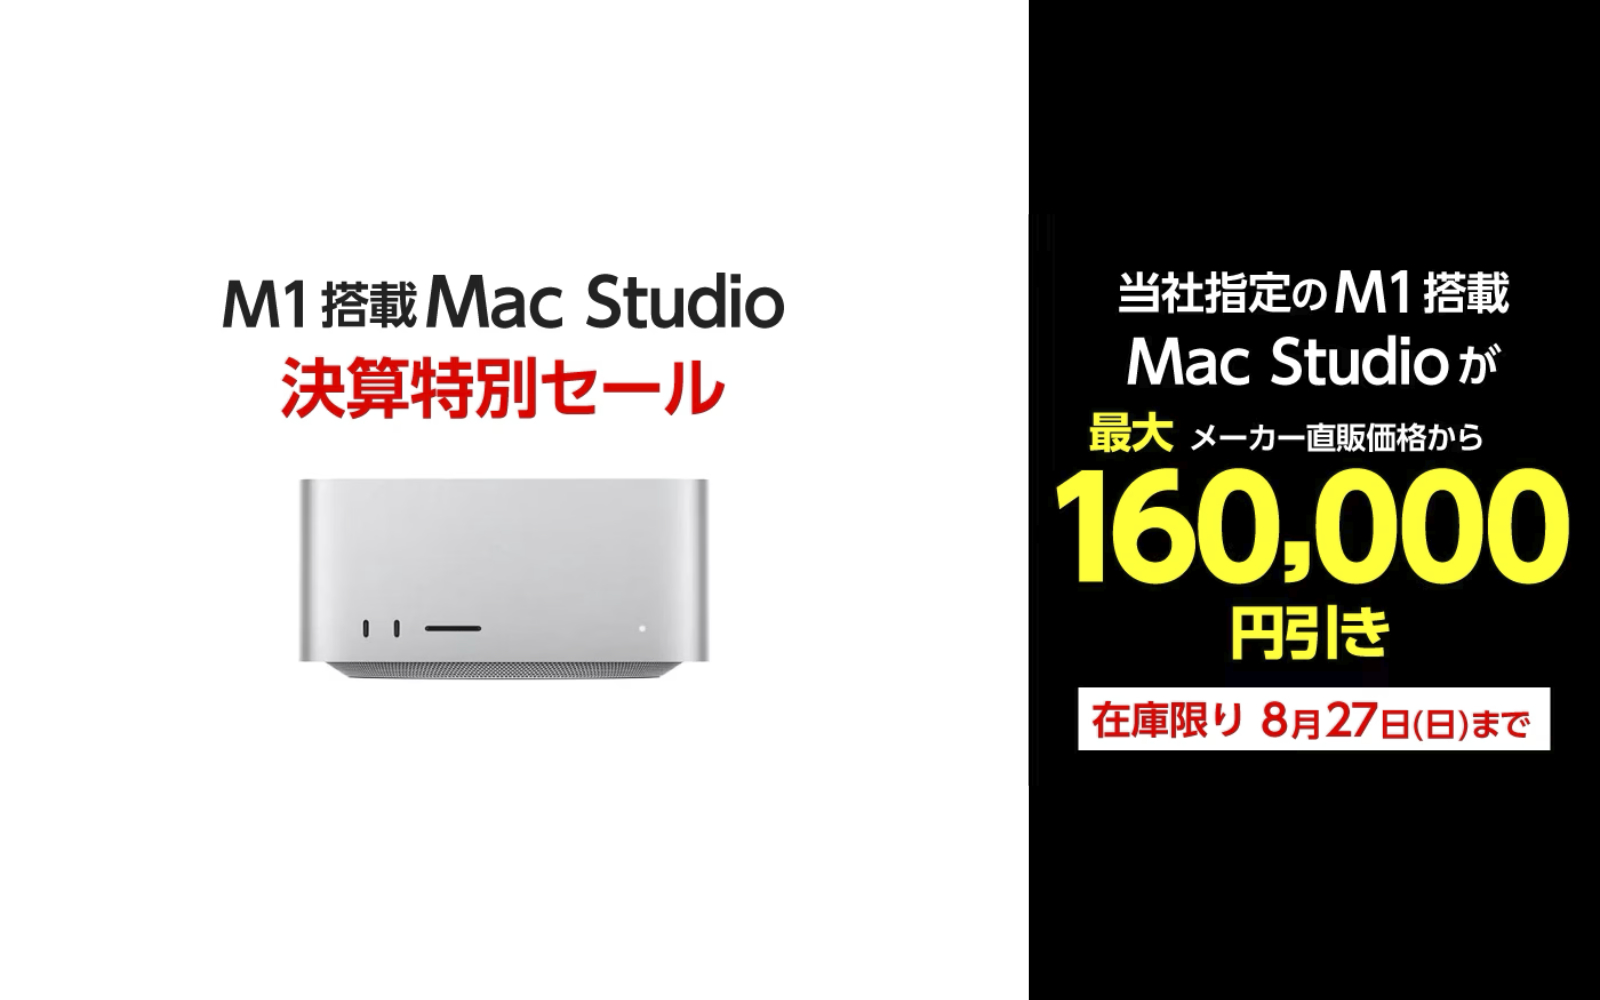 Yamada Webcom M1Max MacStudio Sale